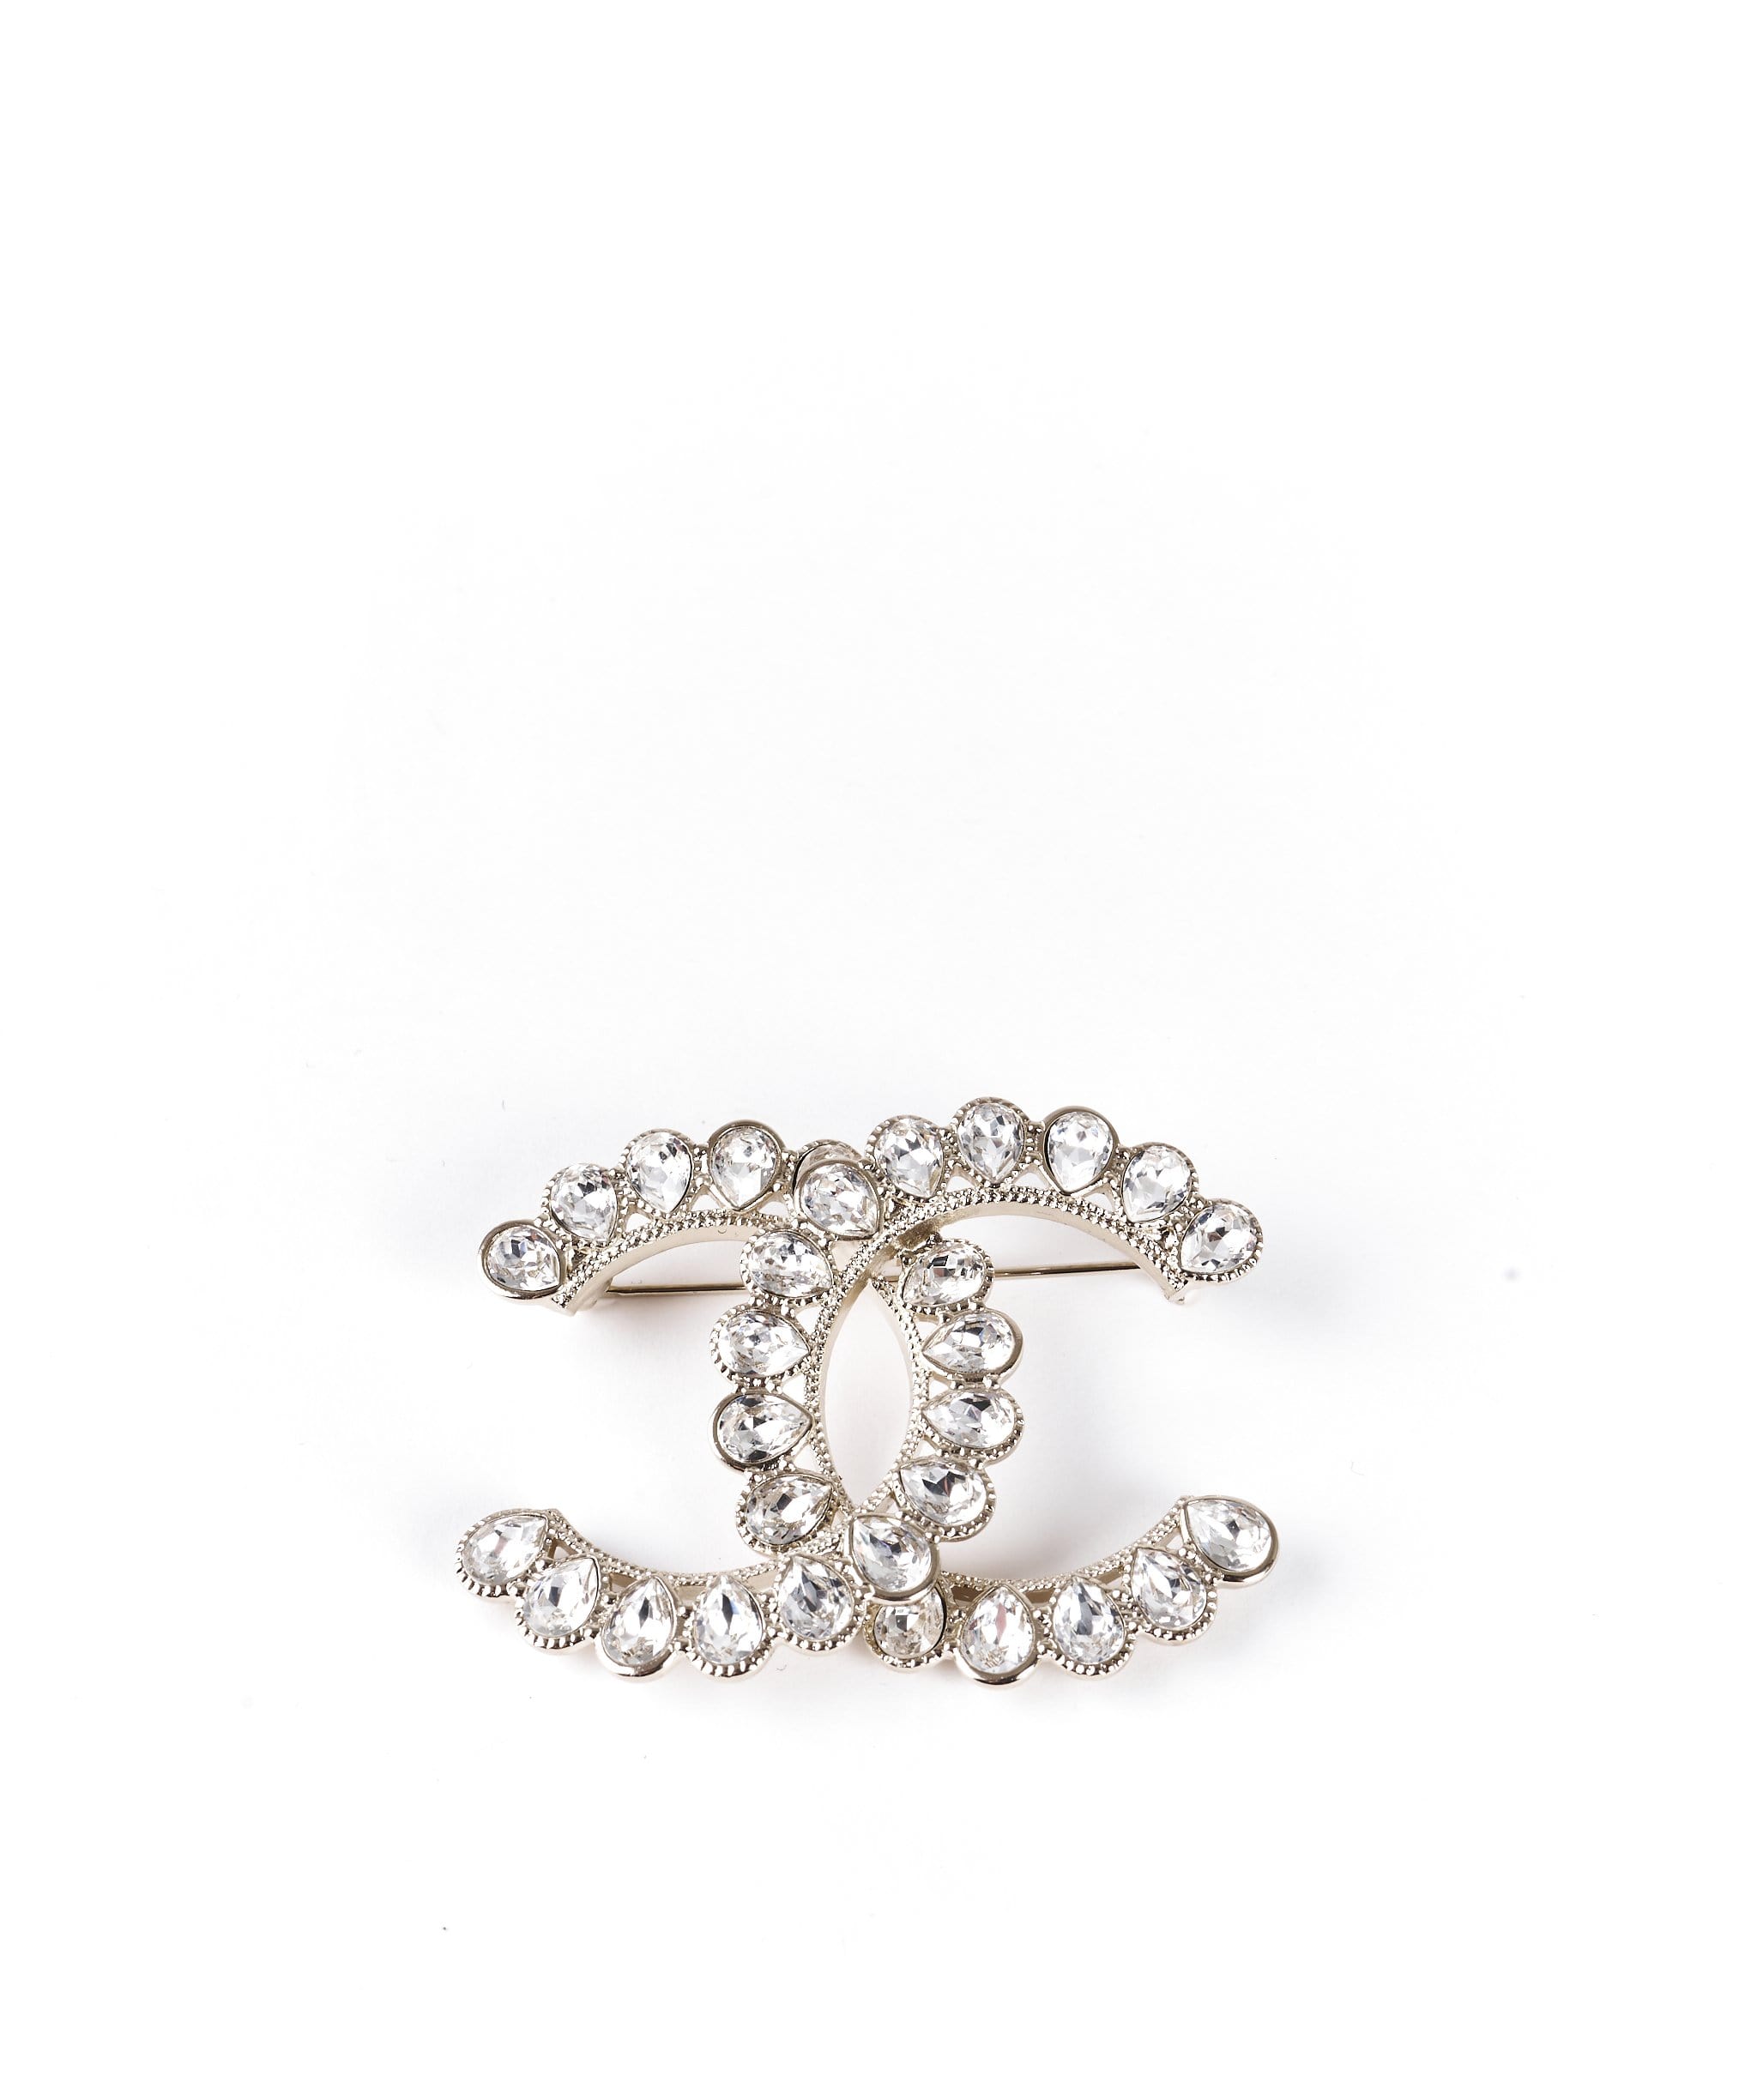 Chanel Chanel brooch Diamantés 2020